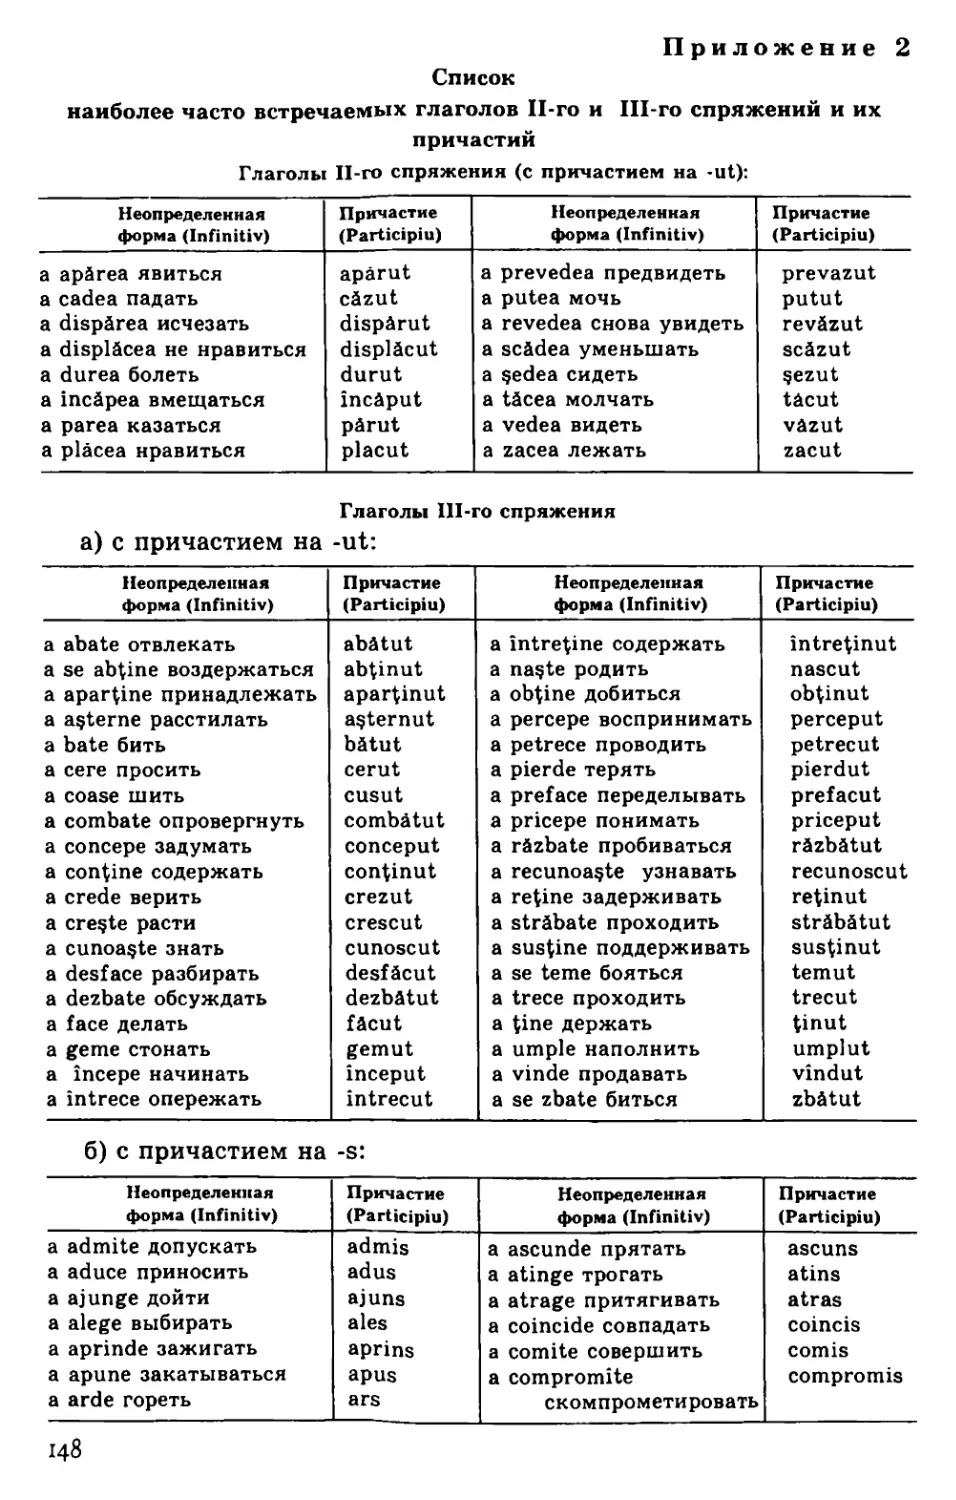 Приложение 2. Список наиболее часто встречаемых глаголов II-го и III-го спряжений и их причастий